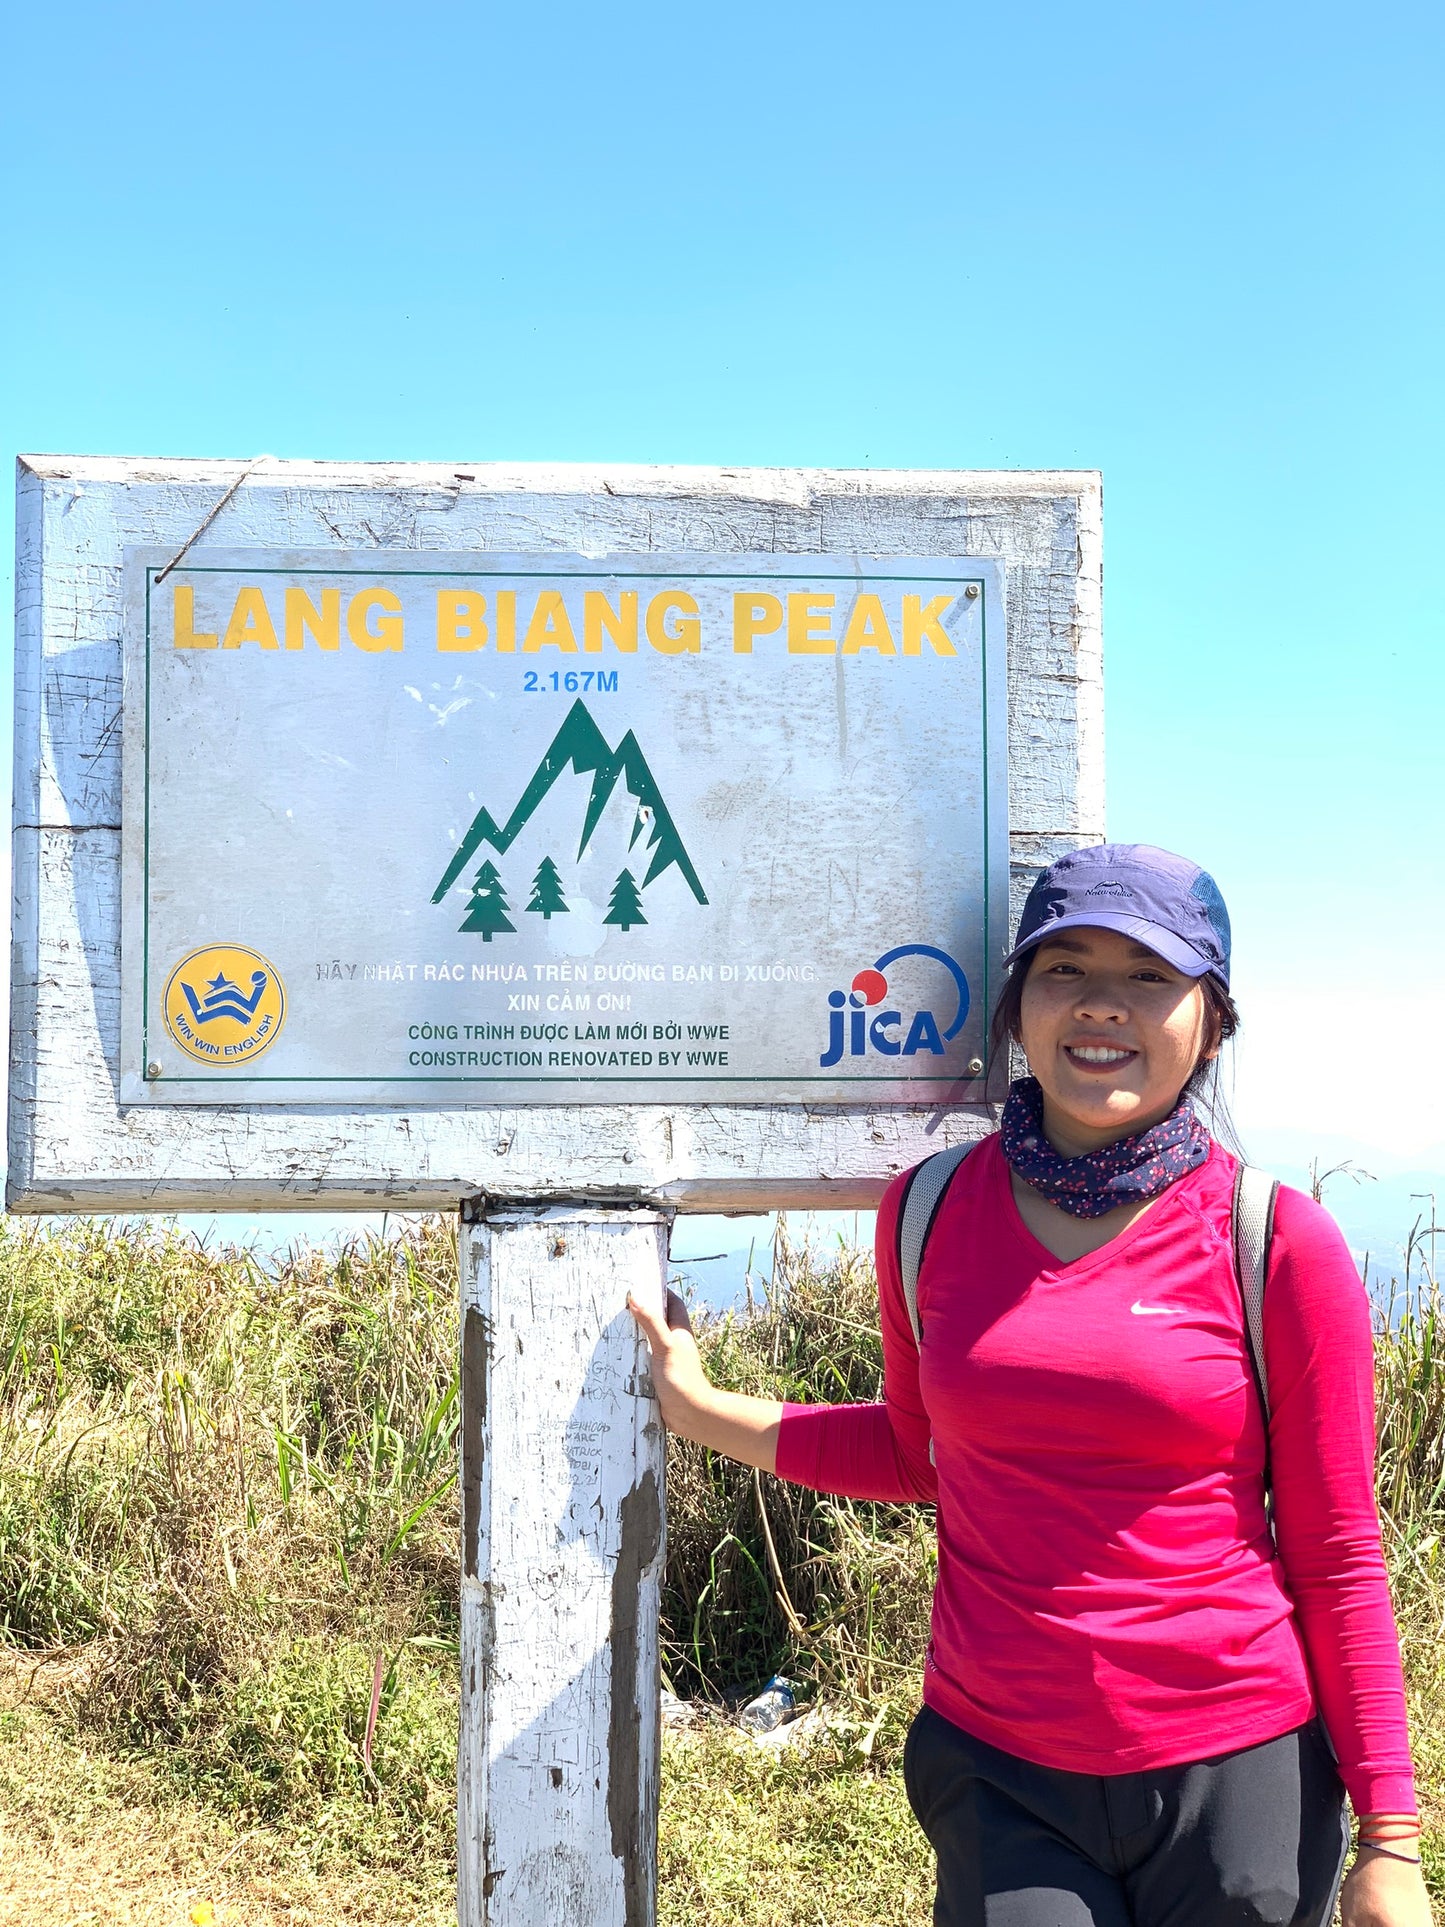 15B (2 DÍAS): Monte Langbiang (2167 m): conquistando el pico de Dalat, presenciando la niebla envolvente